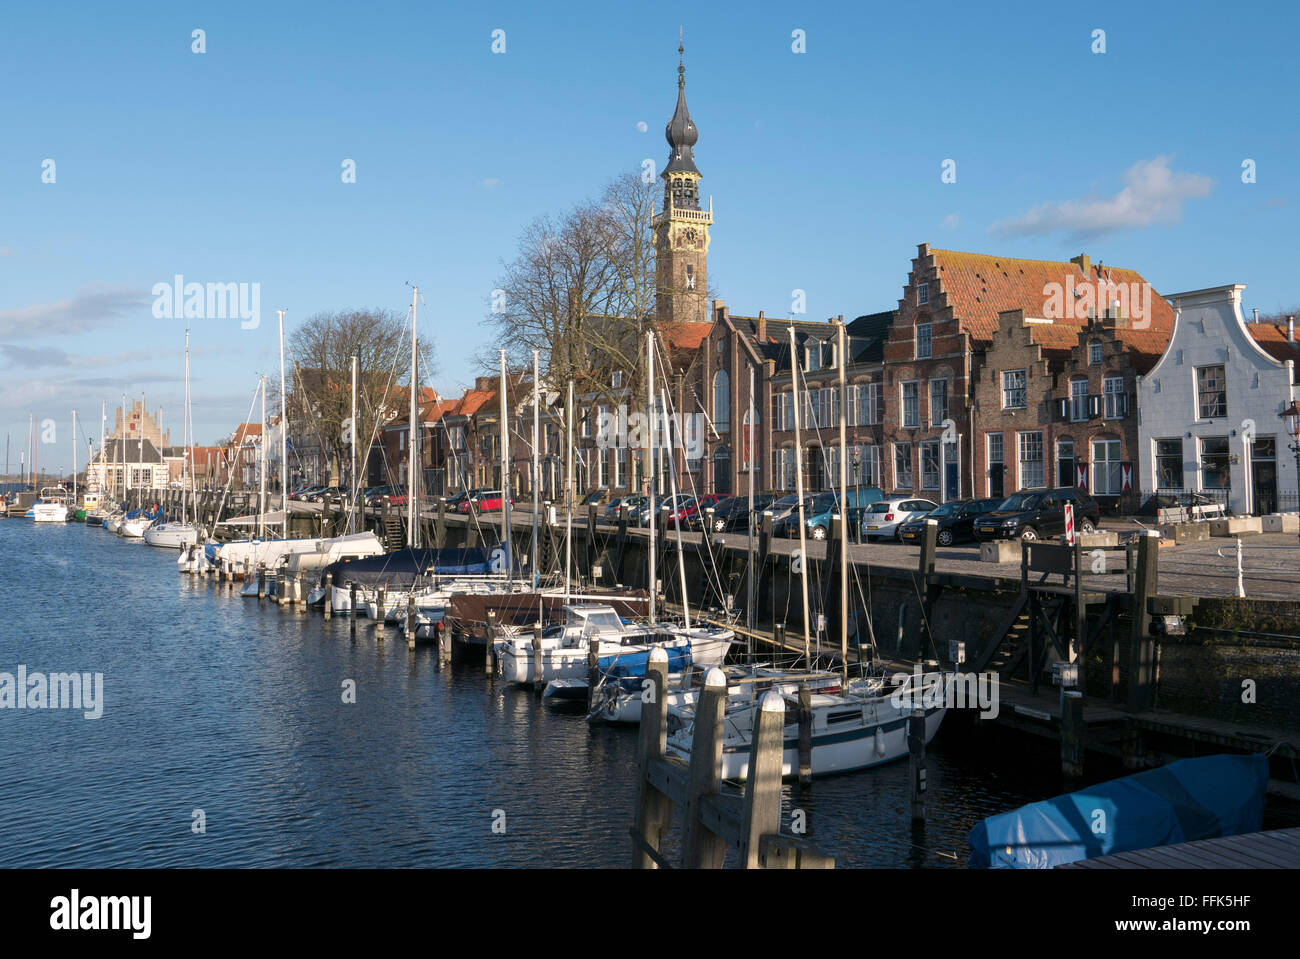 Hafen von Veere, Provinz Seeland, Niederlande | Hafen von Veere, Zeeland, Niederlande Stockfoto